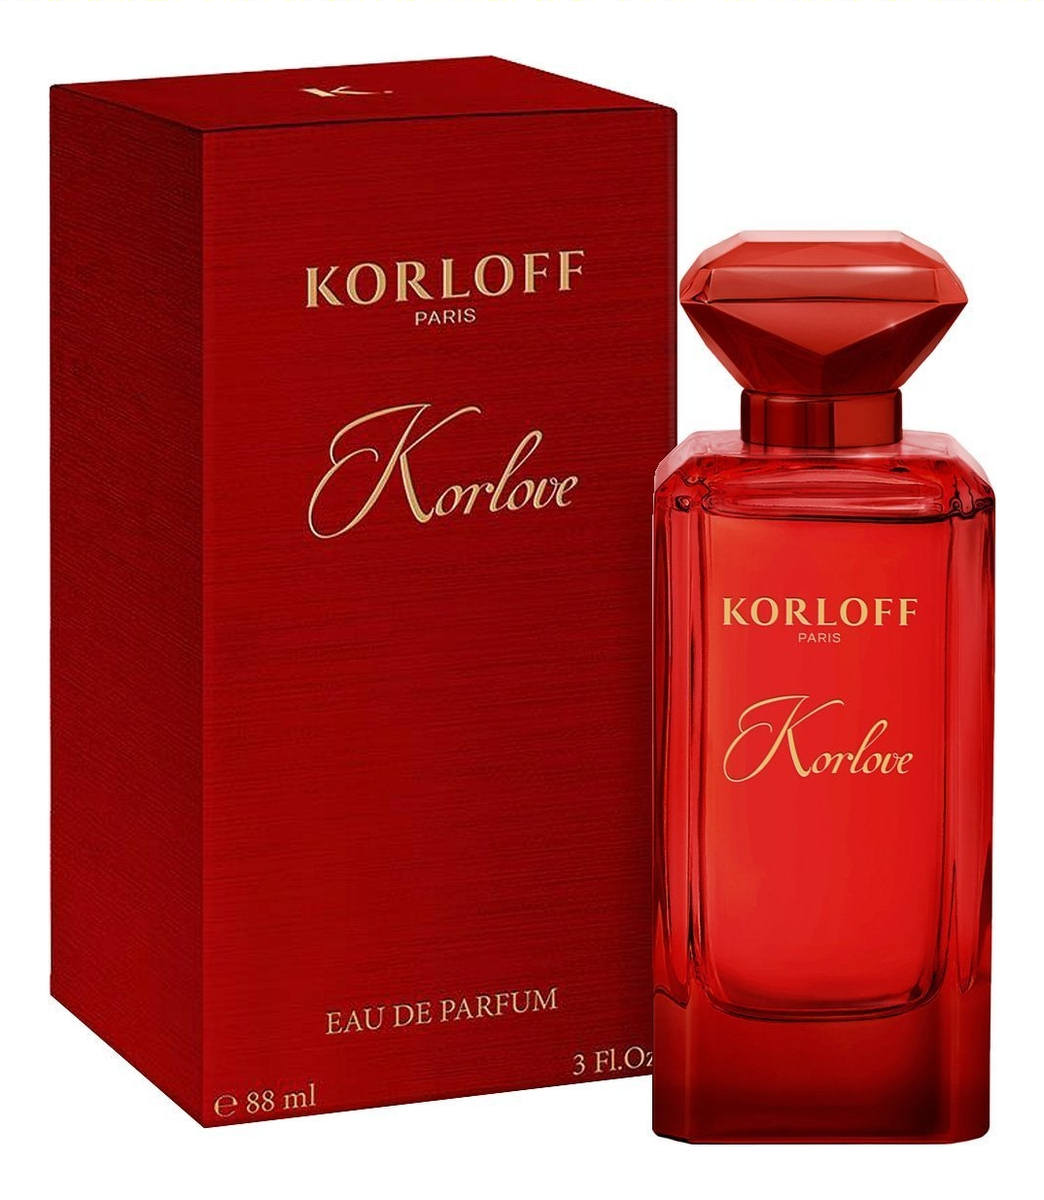 Korloff - Korlove